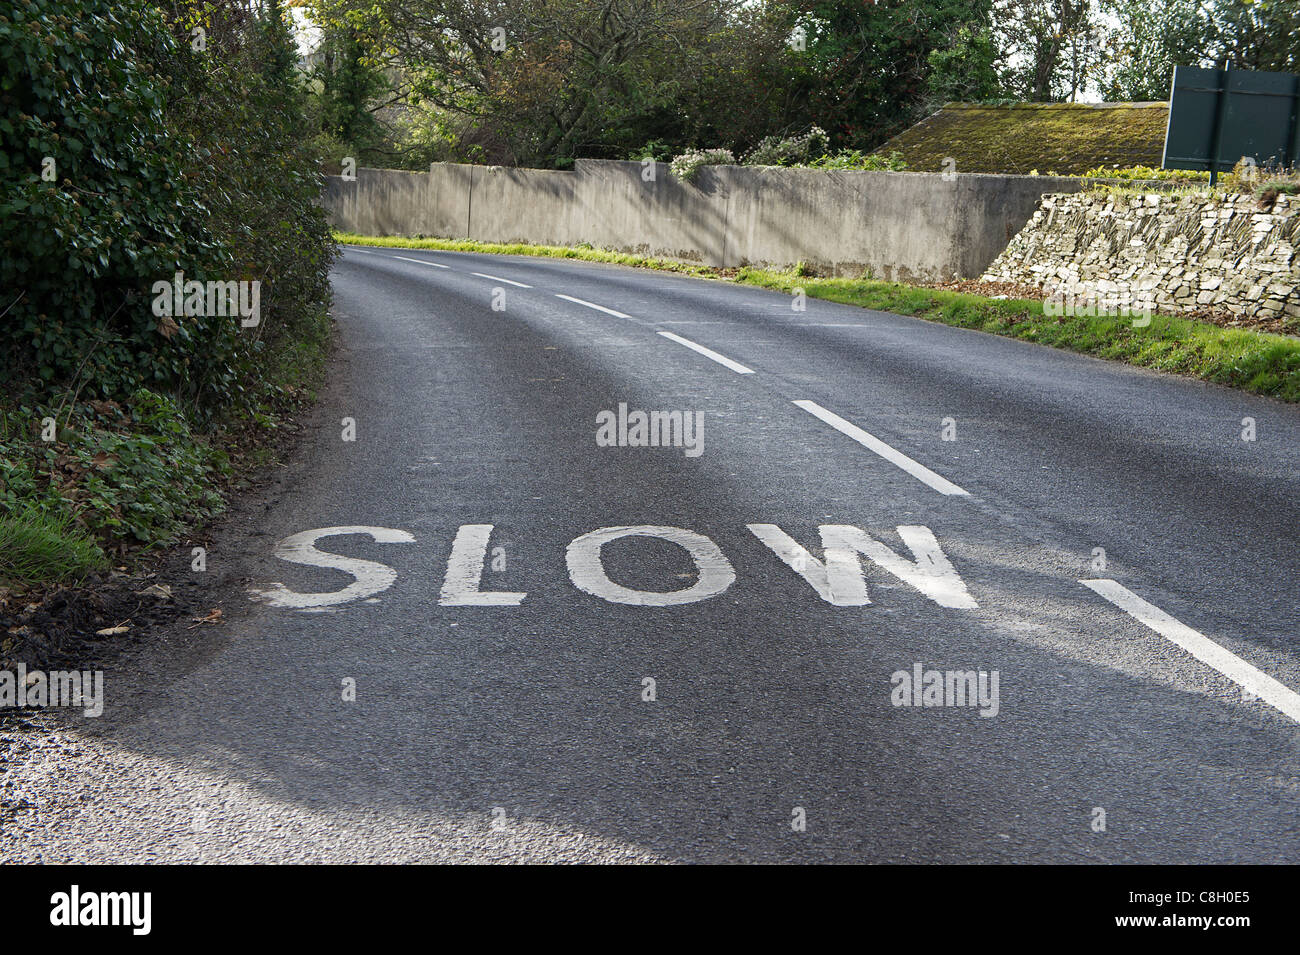 Un lent signe peint dans la route près d'un virage, uk Banque D'Images